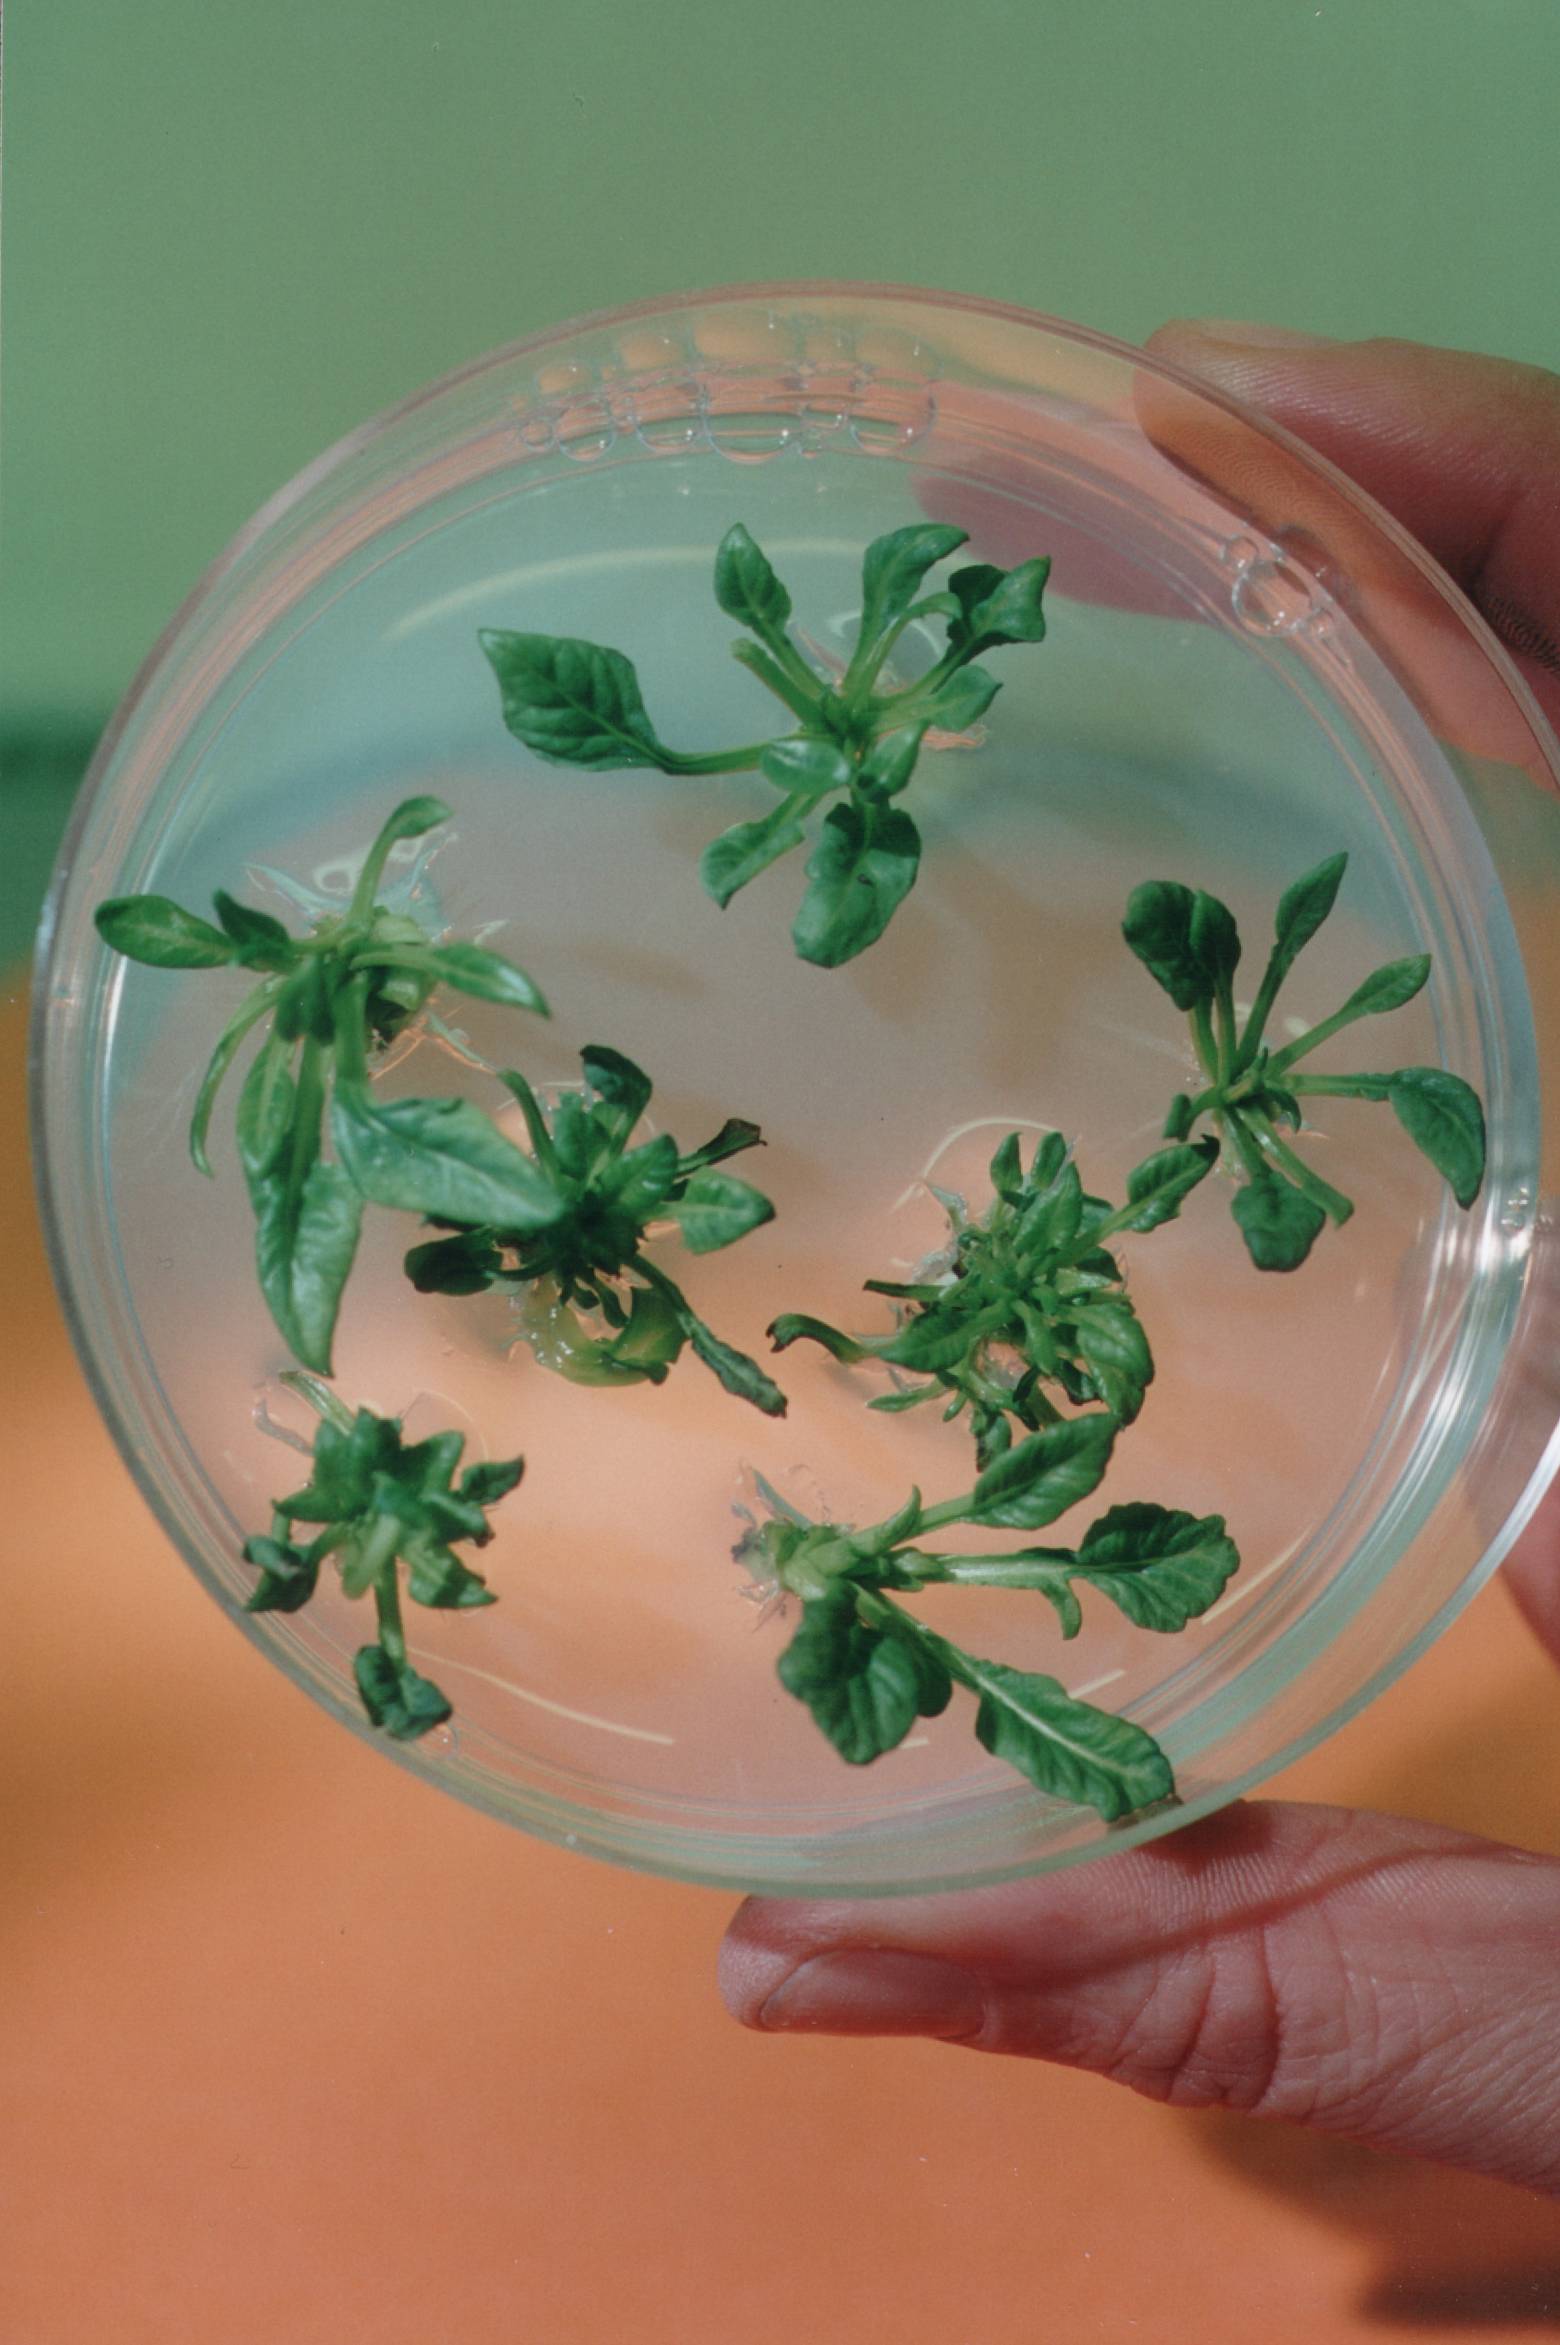 Piastra di Petri contenente plantule di barbabietola da zucchero coltivate in vitro